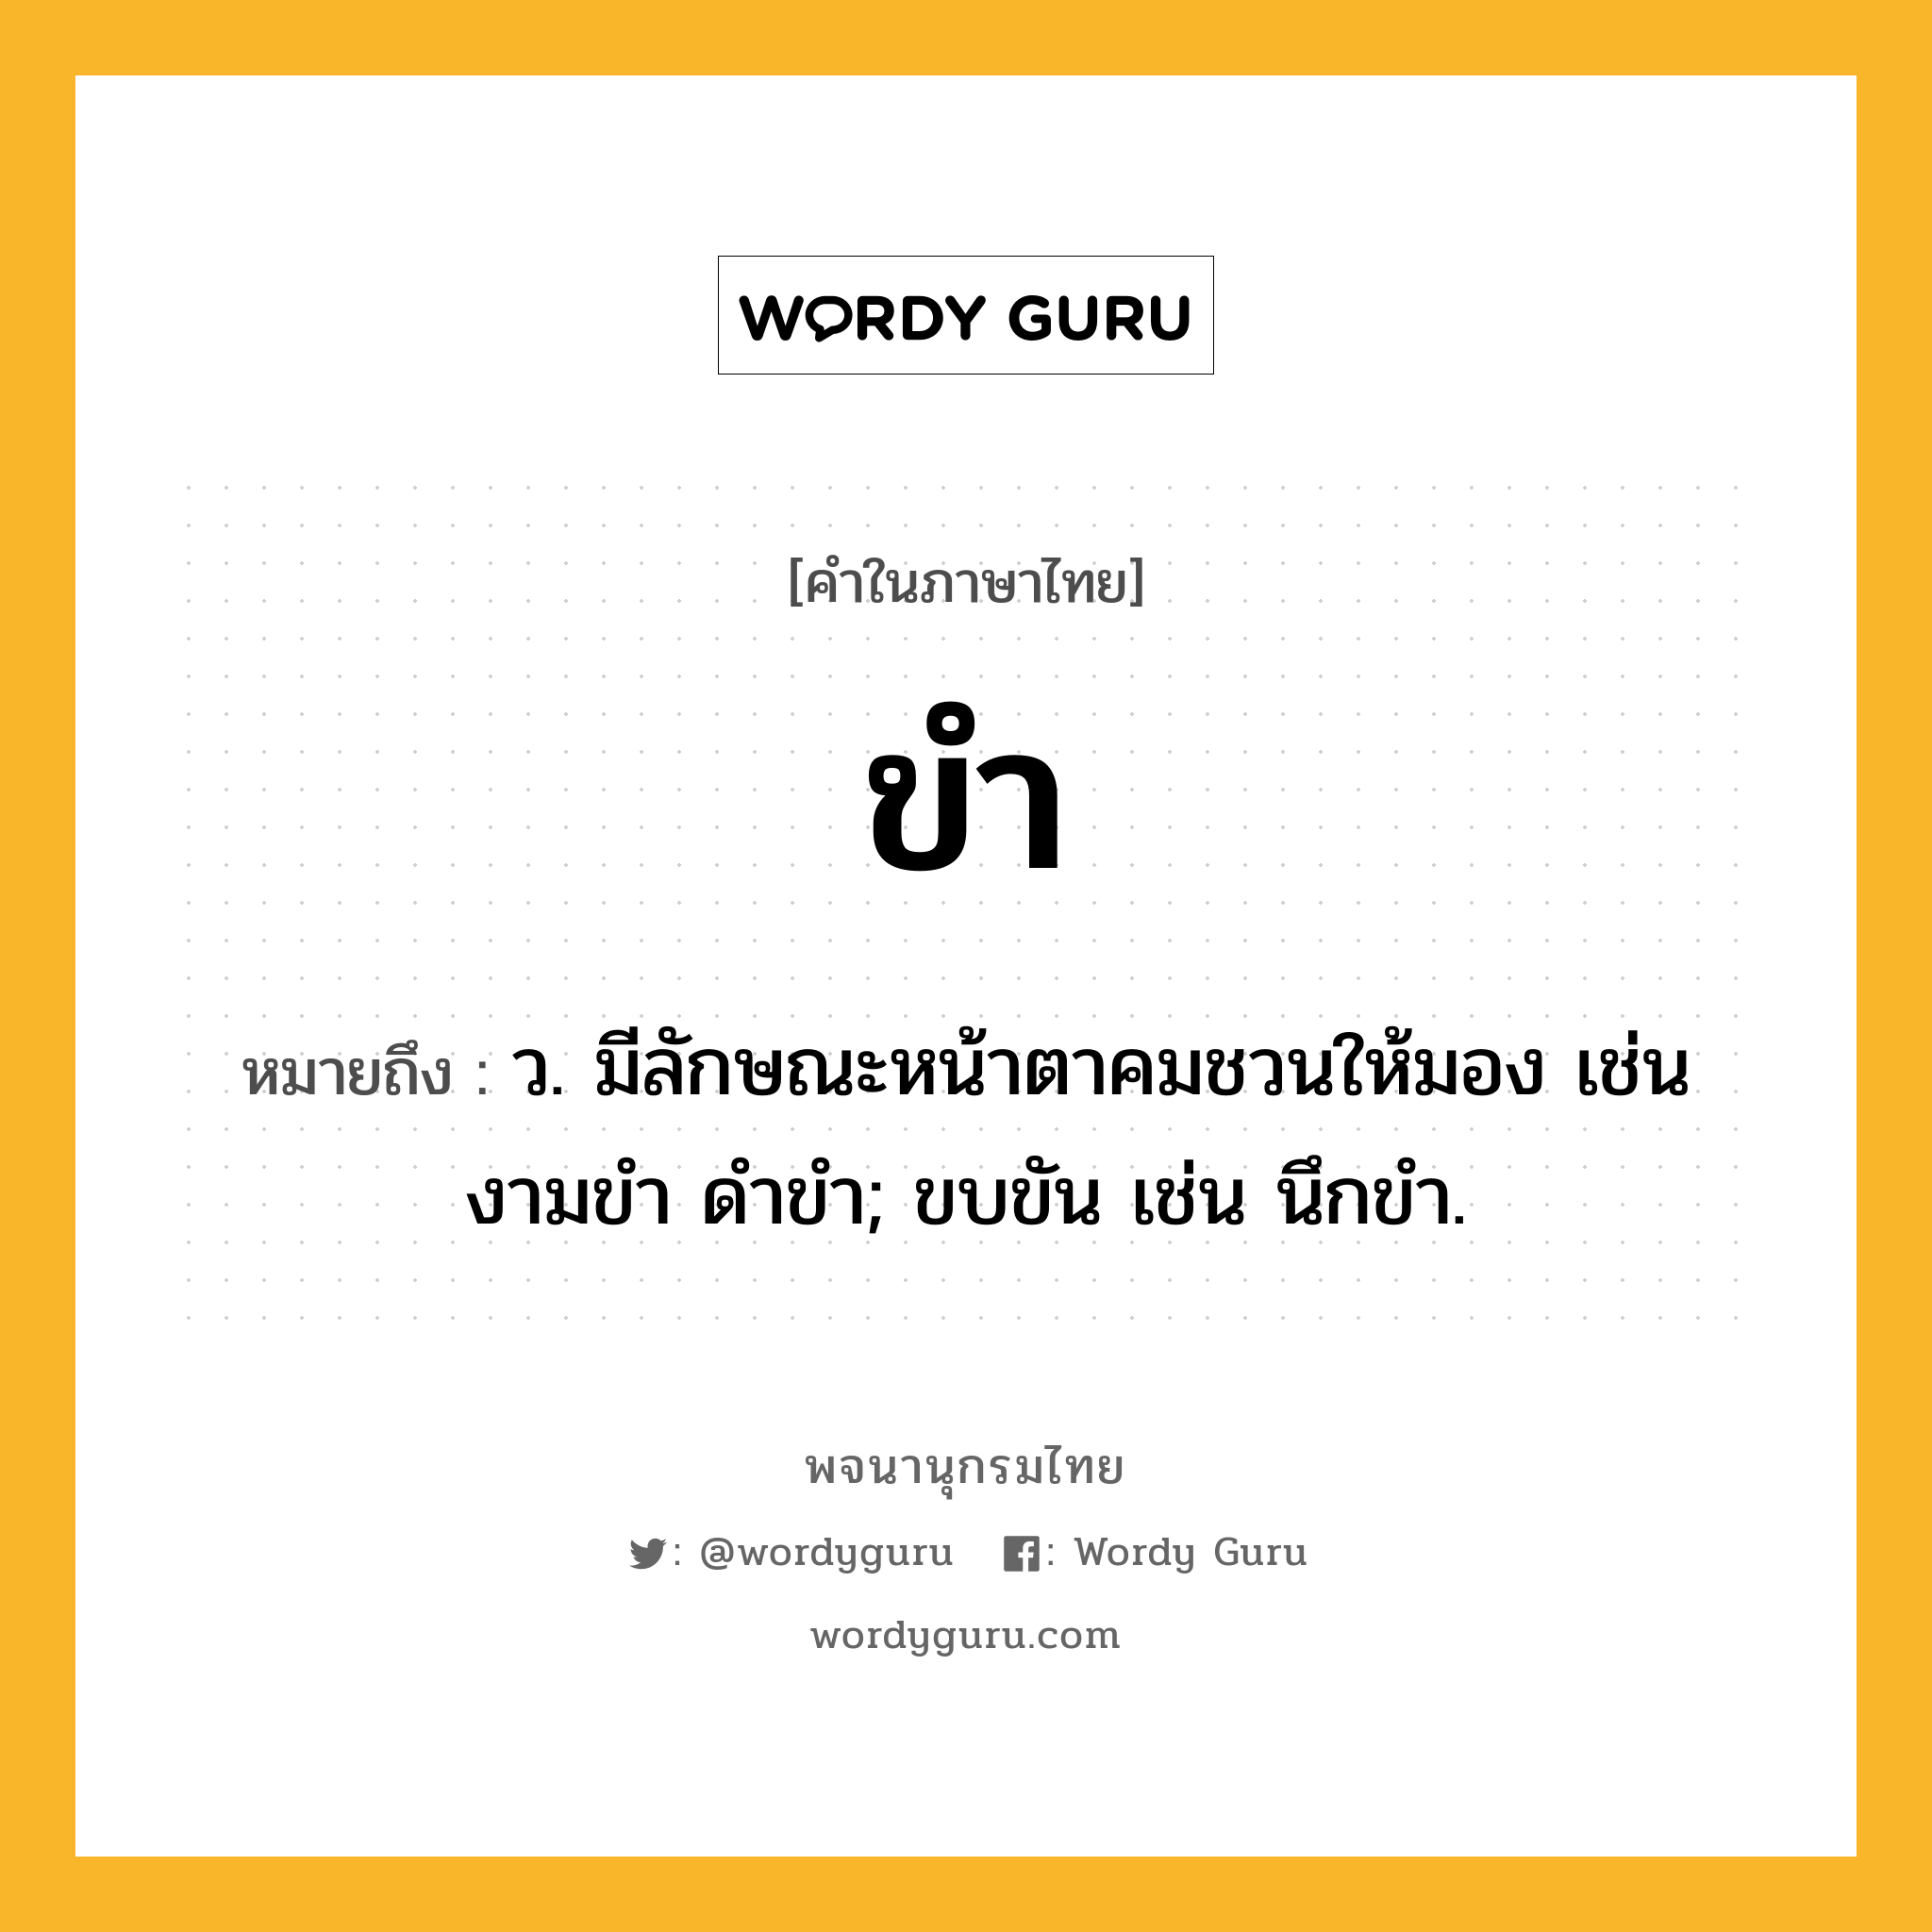 ขำ ความหมาย หมายถึงอะไร?, คำในภาษาไทย ขำ หมายถึง ว. มีลักษณะหน้าตาคมชวนให้มอง เช่น งามขํา ดำขำ; ขบขัน เช่น นึกขํา.